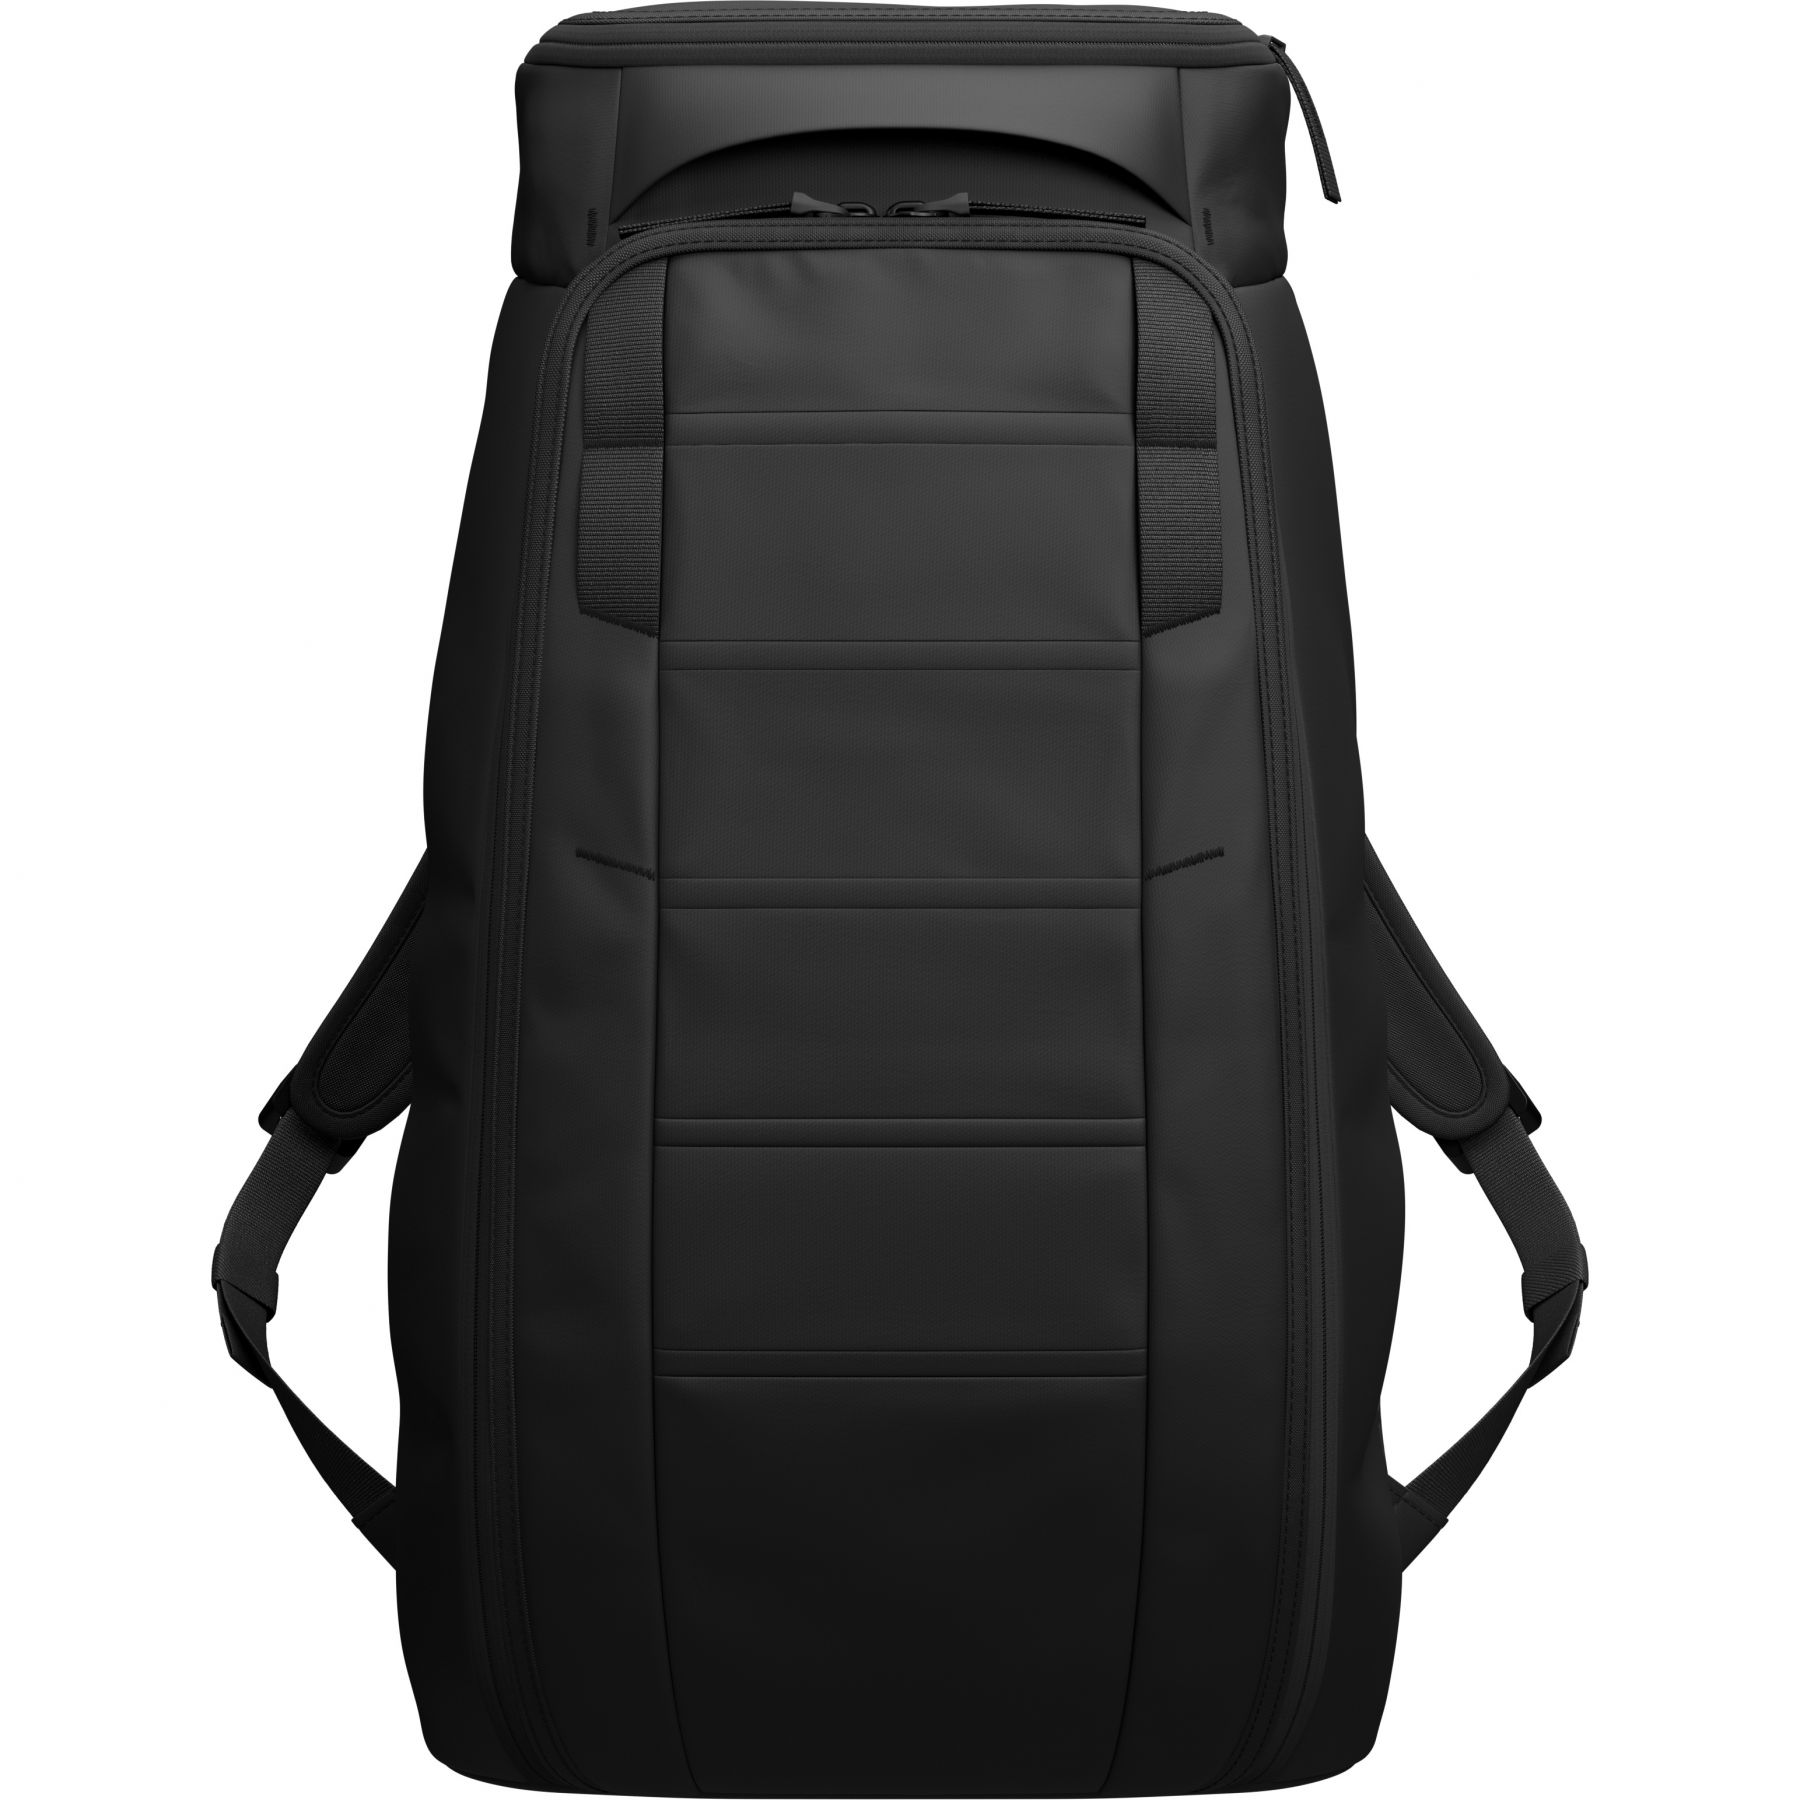 Brug Db Hugger, 25L, rygsæk, black out til en forbedret oplevelse